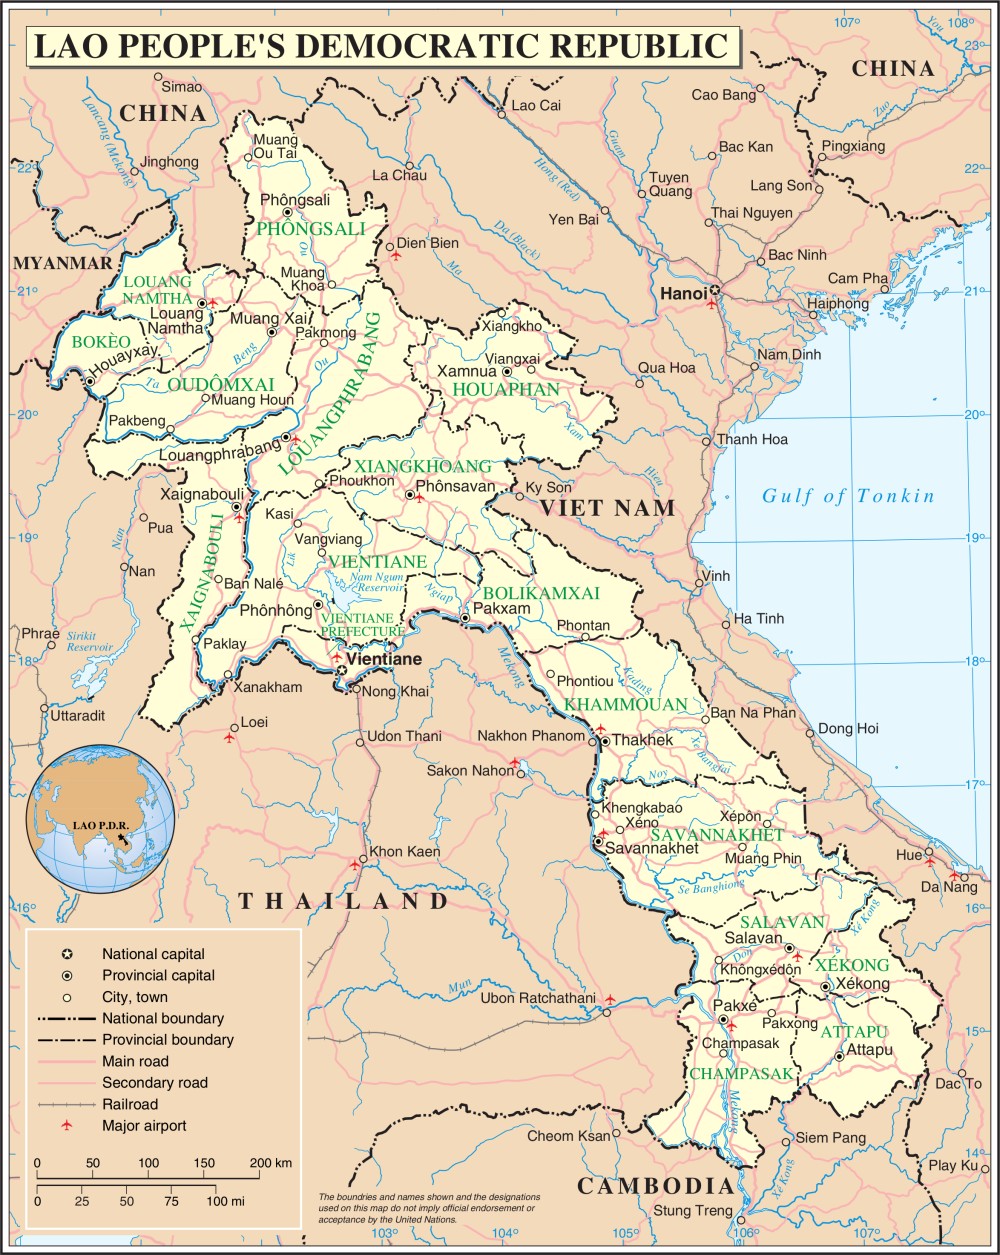 Bản đồ Laos năm 2024 cho thấy sự phát triển rõ rệt của đất nước láng giềng. Laos đang tiến bộ vượt bậc về kinh tế và xã hội, với cơ sở hạ tầng hiện đại, các dự án đầu tư được triển khai, đem lại cơ hội phát triển kinh tế cho Việt Nam và khu vực.